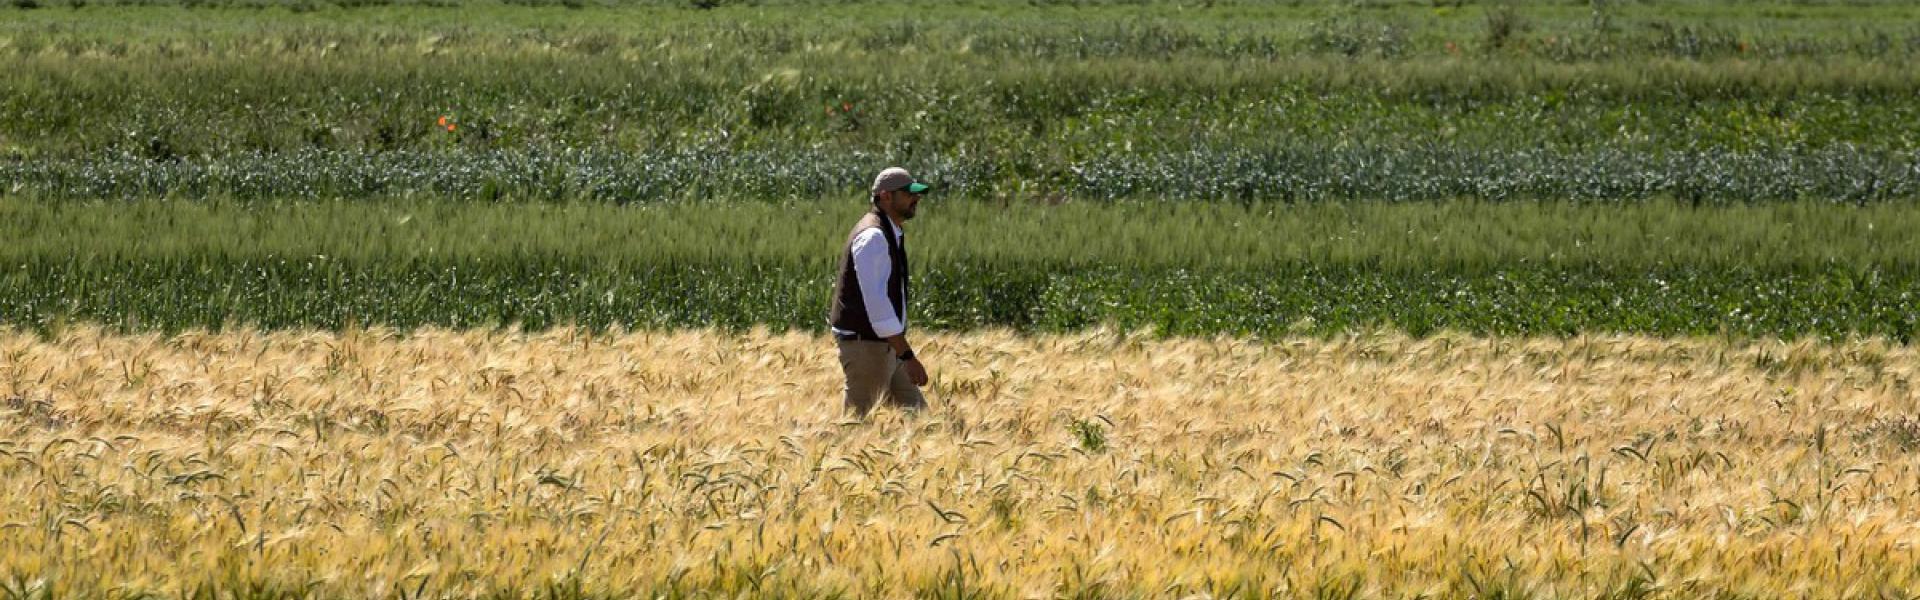 حقول مرشوش تقدم صورة مناقضة تماما لواقع جفاف أضر بالزراعة المغربية